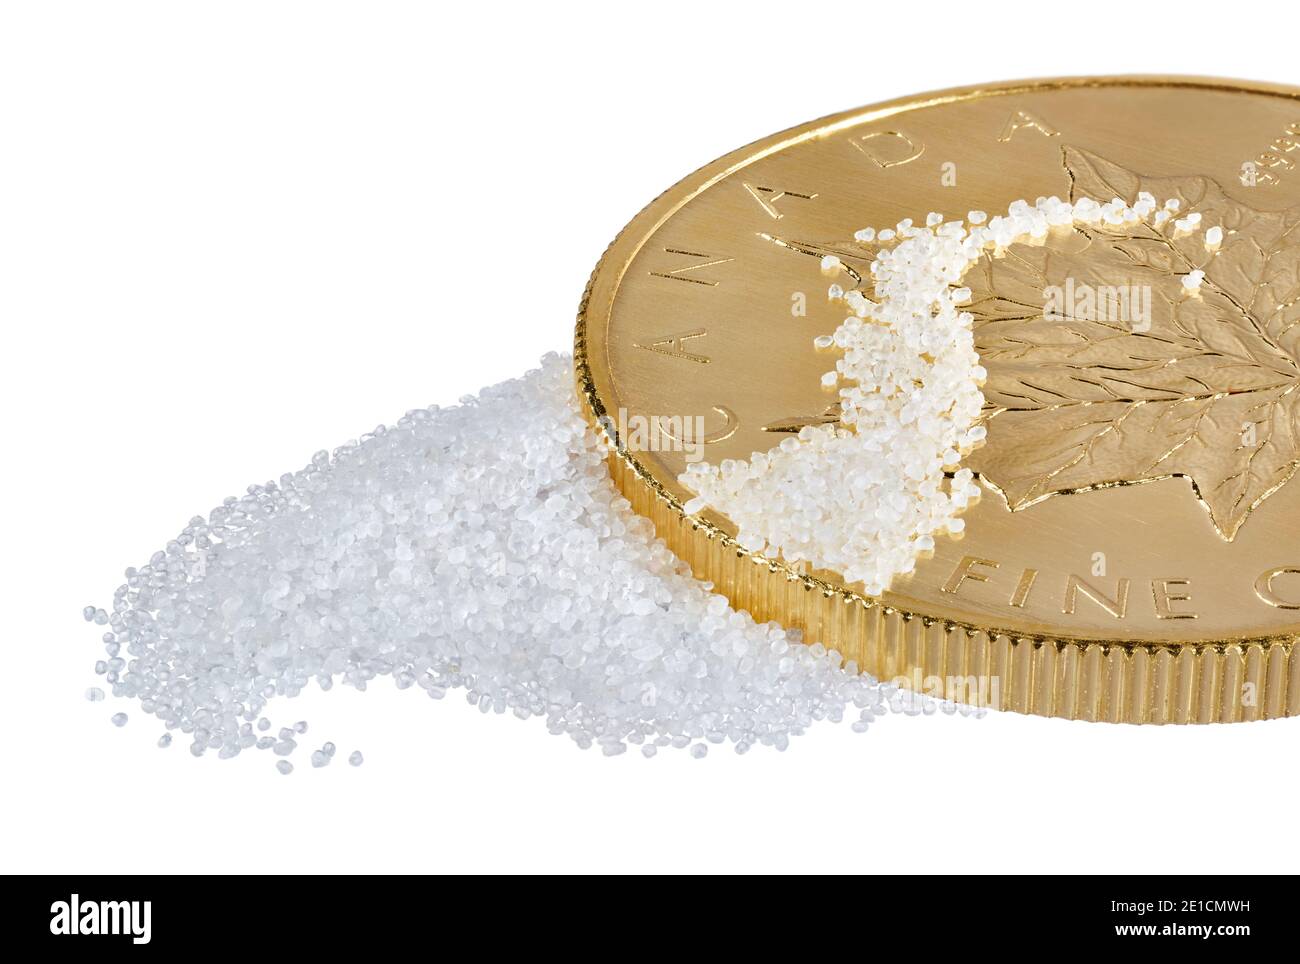 Weißer Sand verstreut auf Gold Kanadische Münze fotografiert auf einem Weißer Hintergrund Stockfoto